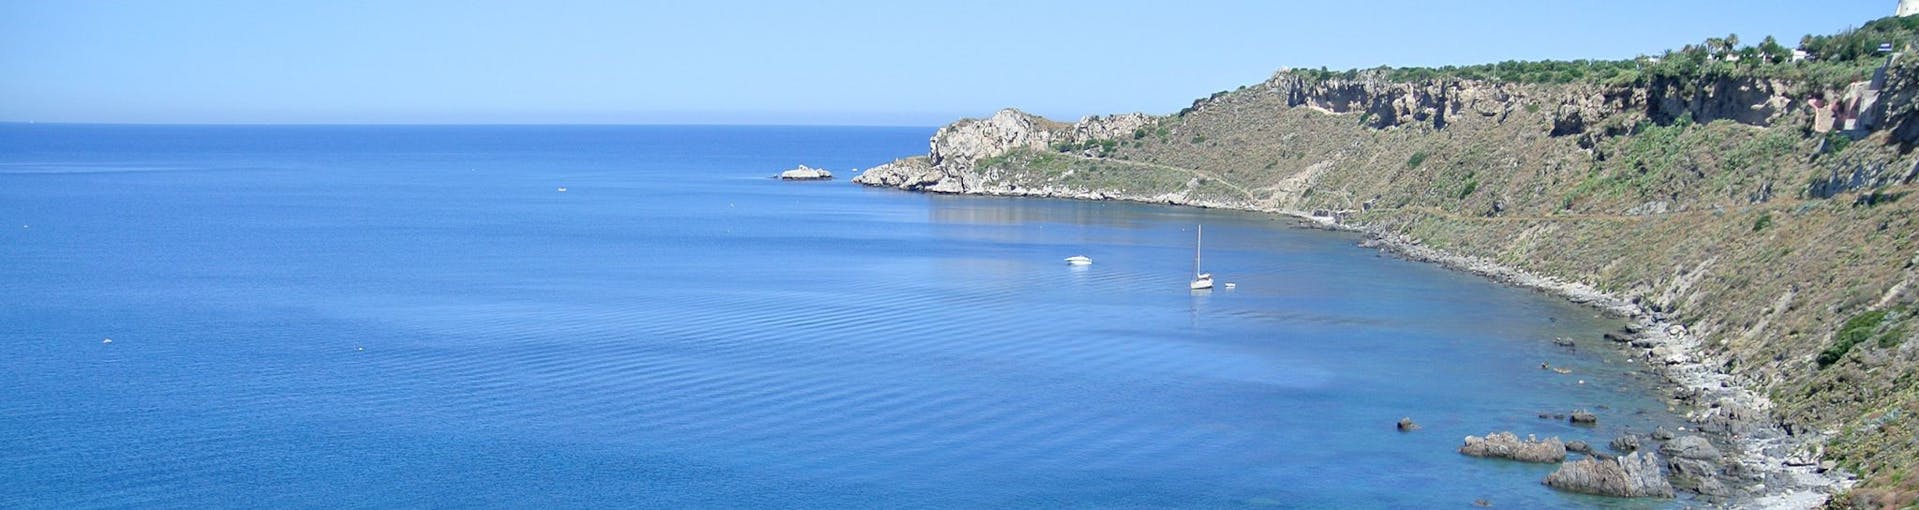 Vista dalla barca di Sky Sea Charter durante la gita in barca privata da Milazzo verso Panarea e Stromboli.